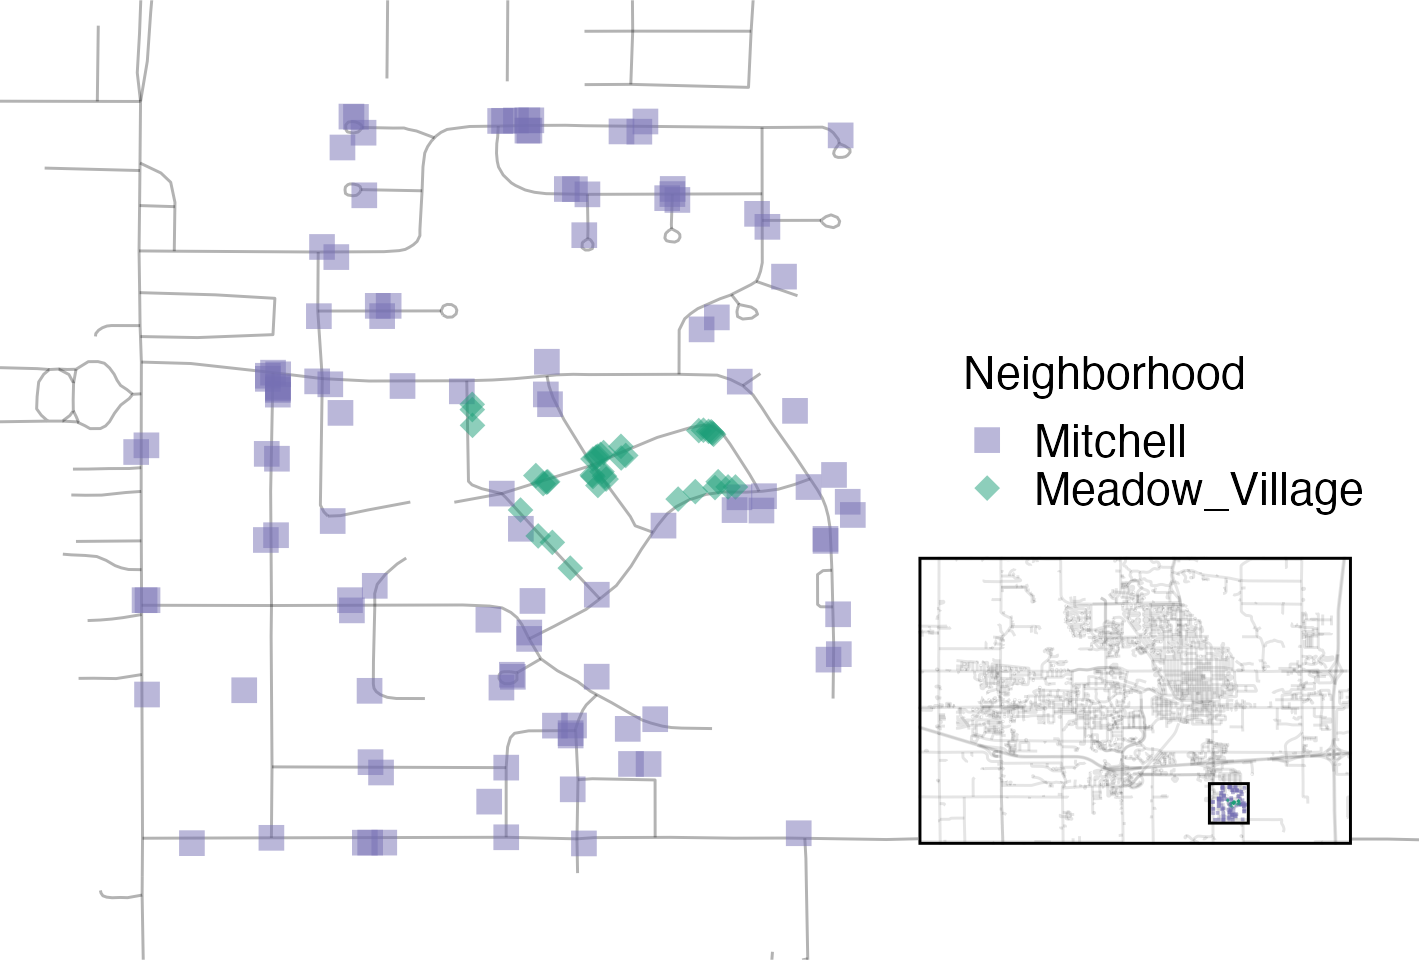 Un diagrama de dispersión de la ubicación de las casas en Meadow Village y Mitchell. La pequeña cantidad de propiedades de Meadow Village están incluidas dentro de las etiquetadas como en Mitchell.